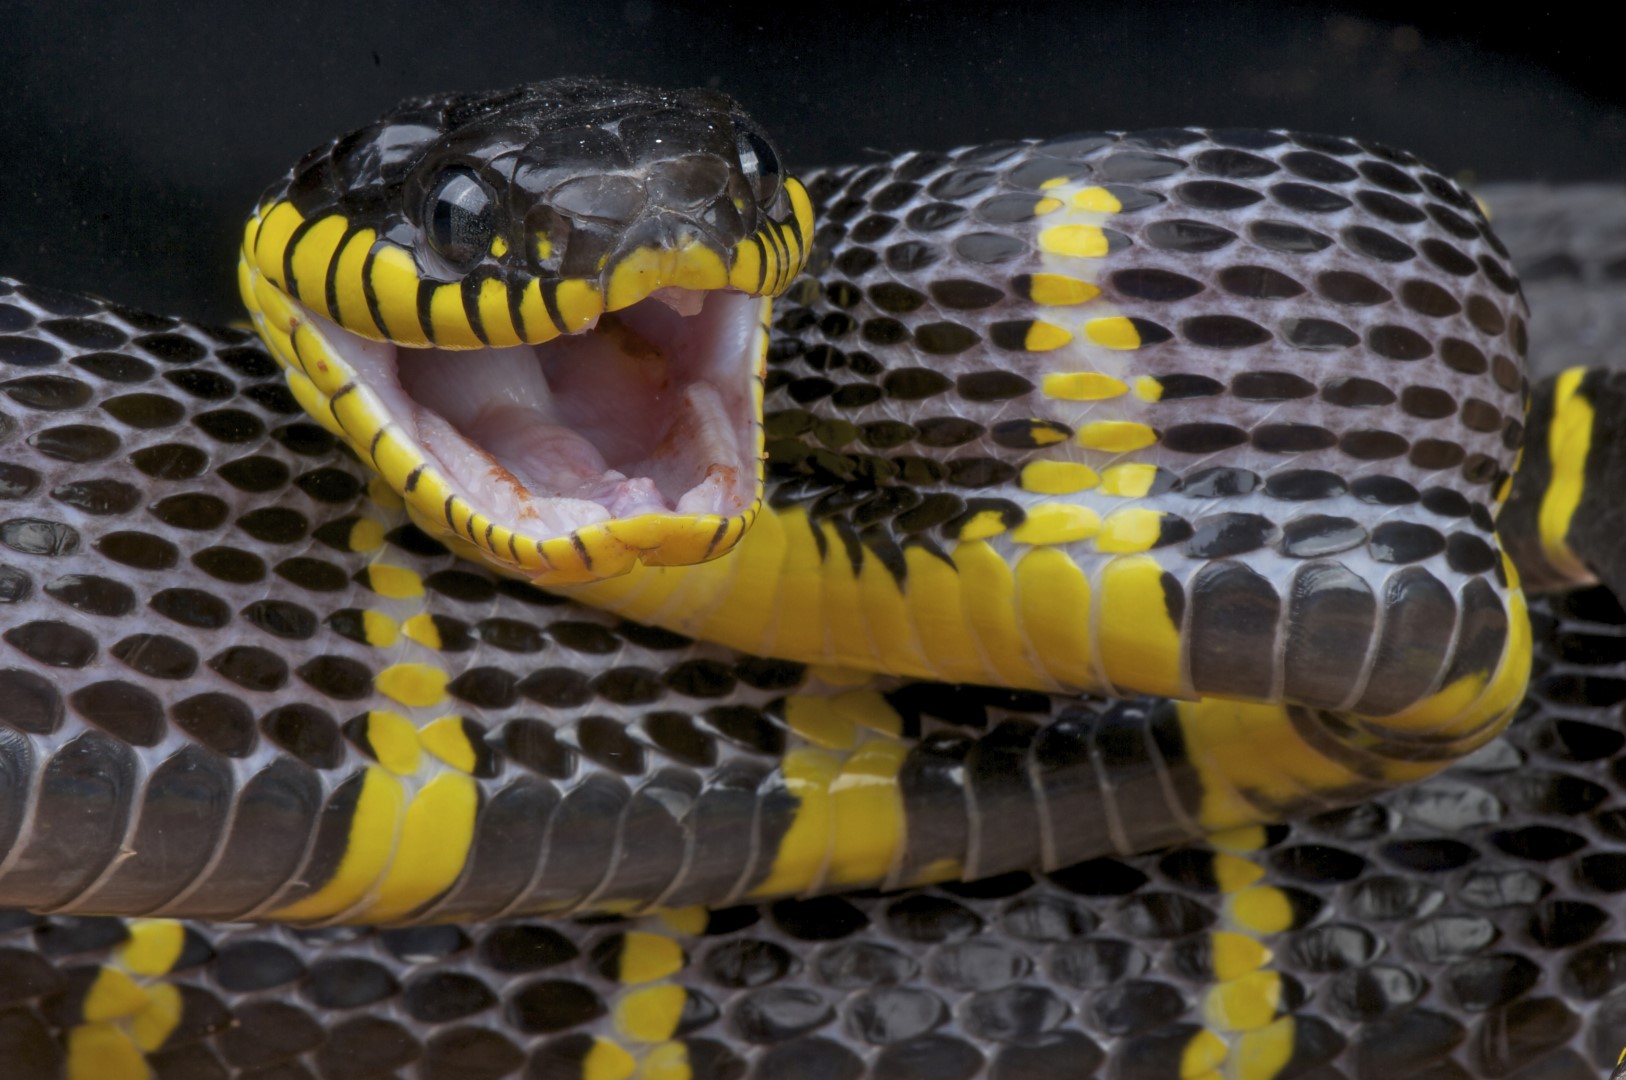 venomous-snake-Large.jpg